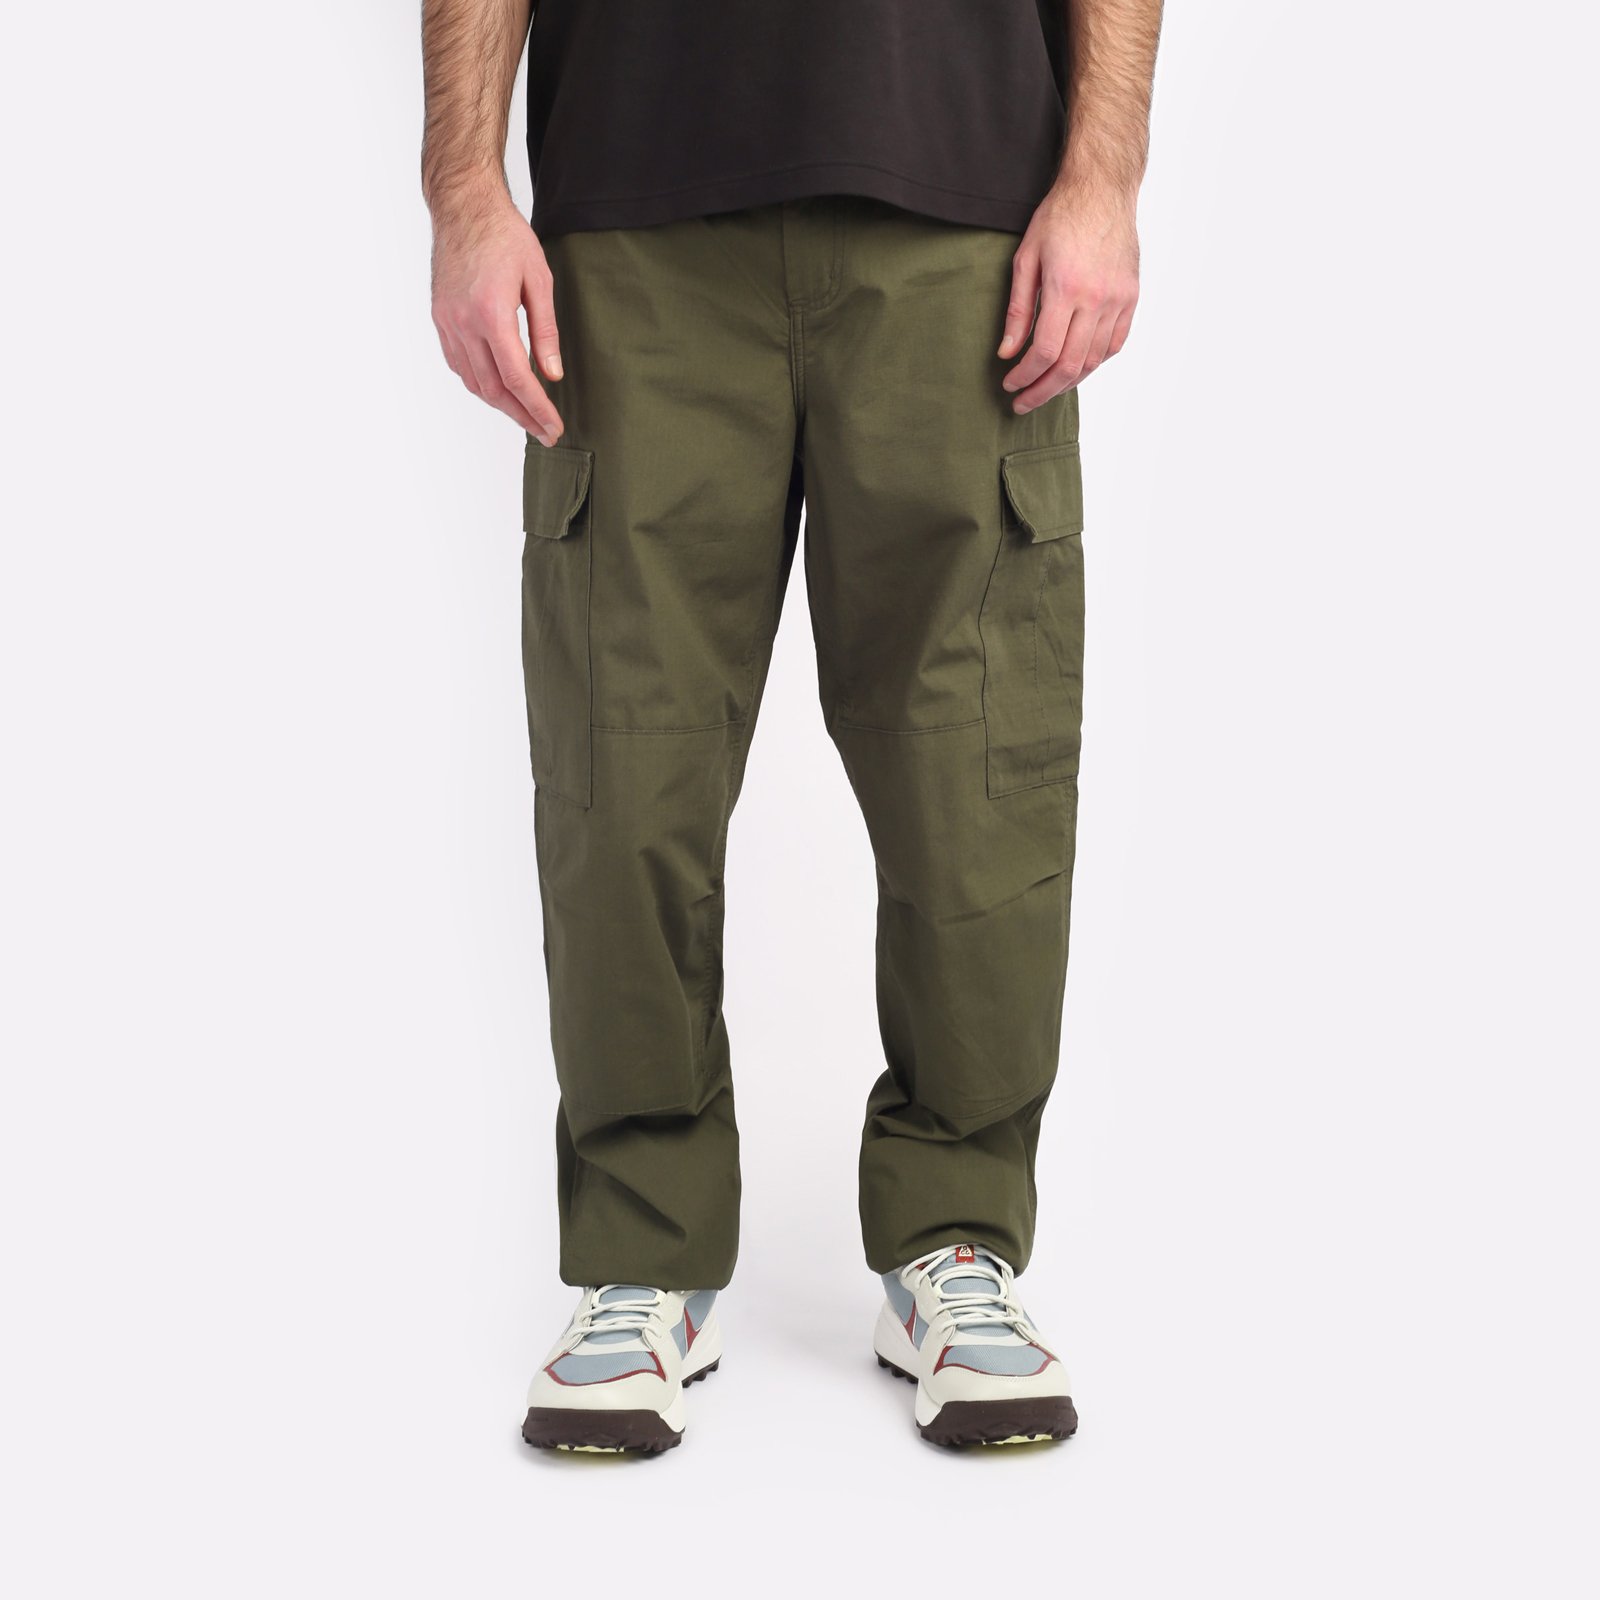 мужские зеленые брюки Carhartt WIP Regular Cargo Pant I032467-cypress - цена, описание, фото 1